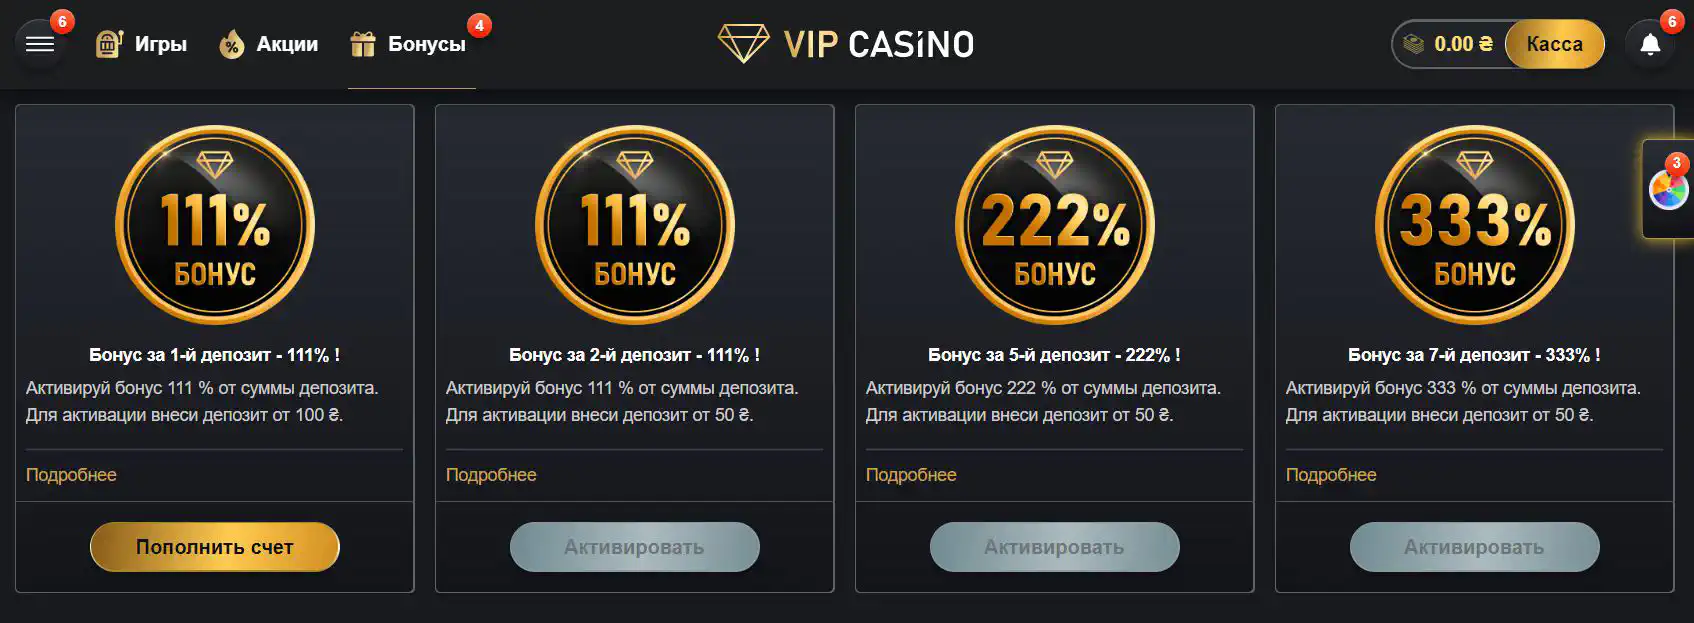 Vip casino bonus